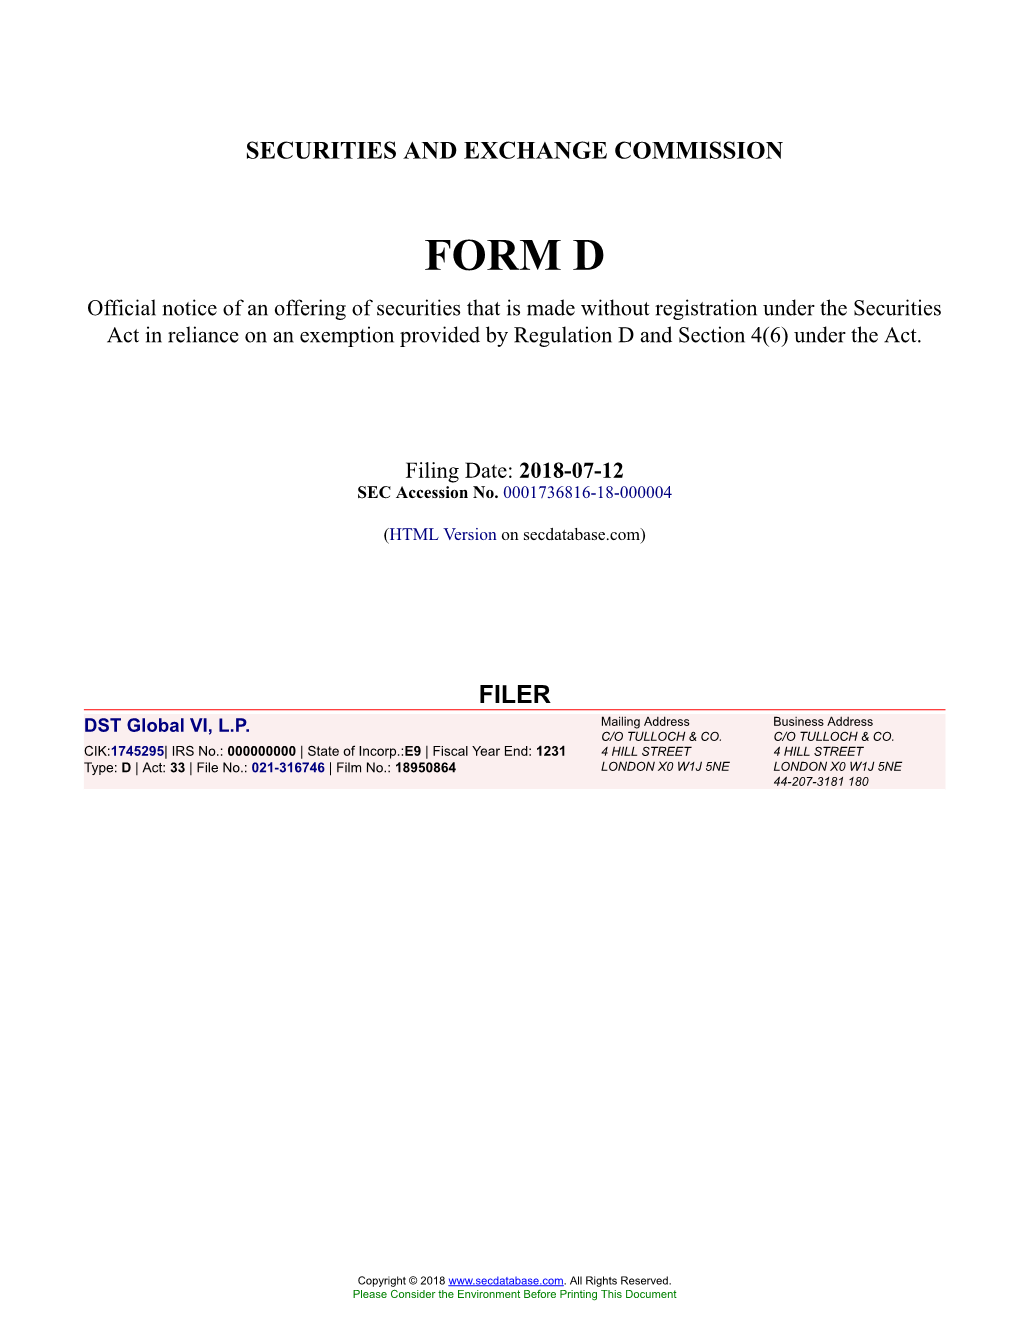 DST Global VI, L.P. Form D Filed 2018-07-12